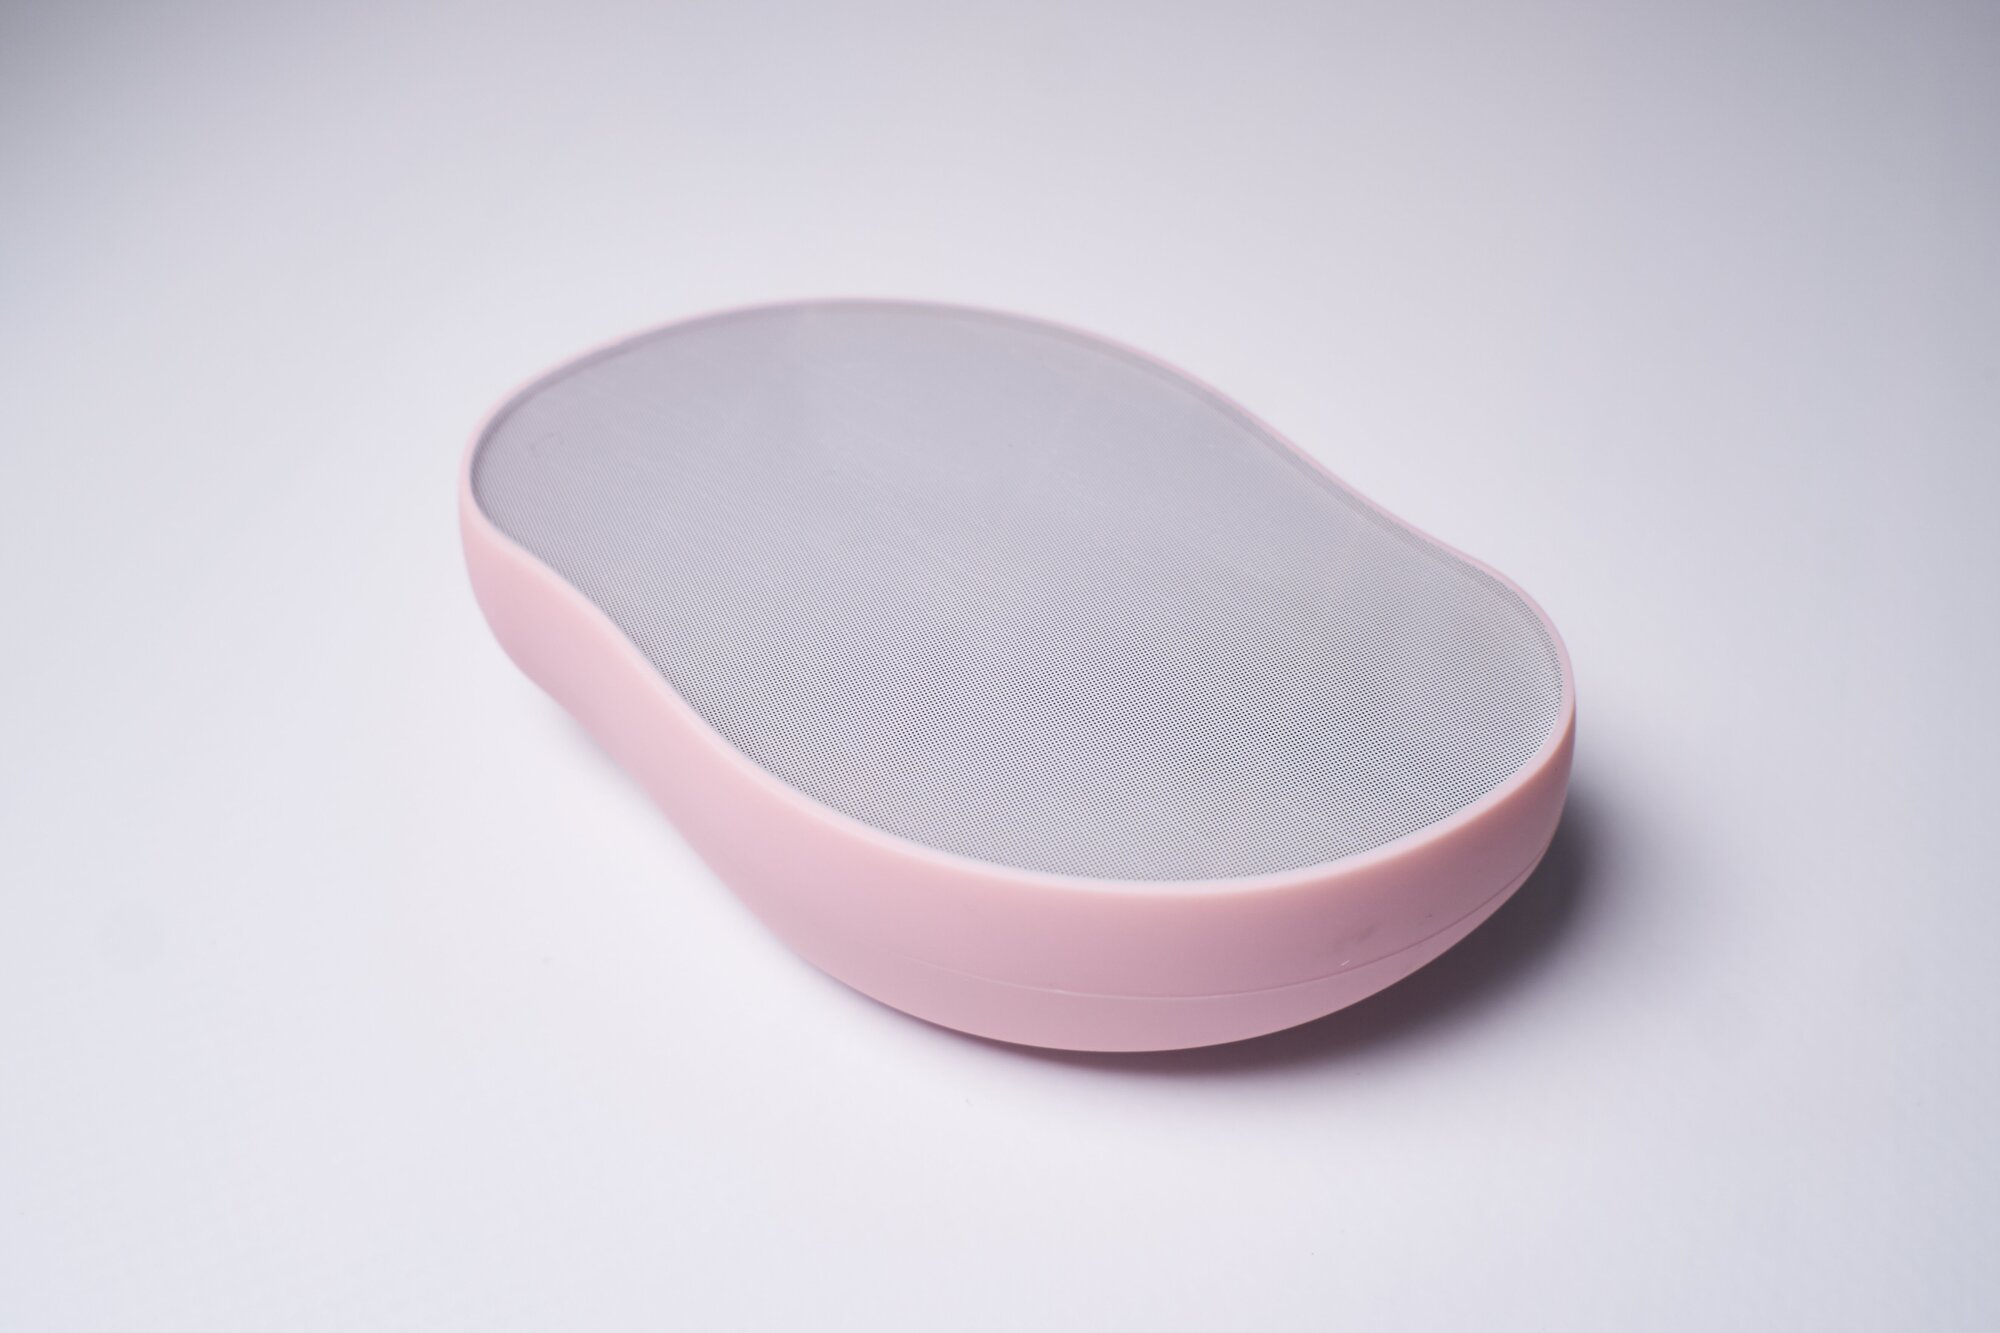 Депилятор ластик для удаления волос и пилинга кожи, кристалл-депилятор с нано-абразивным покрытием, розовая пудра - фотография № 4